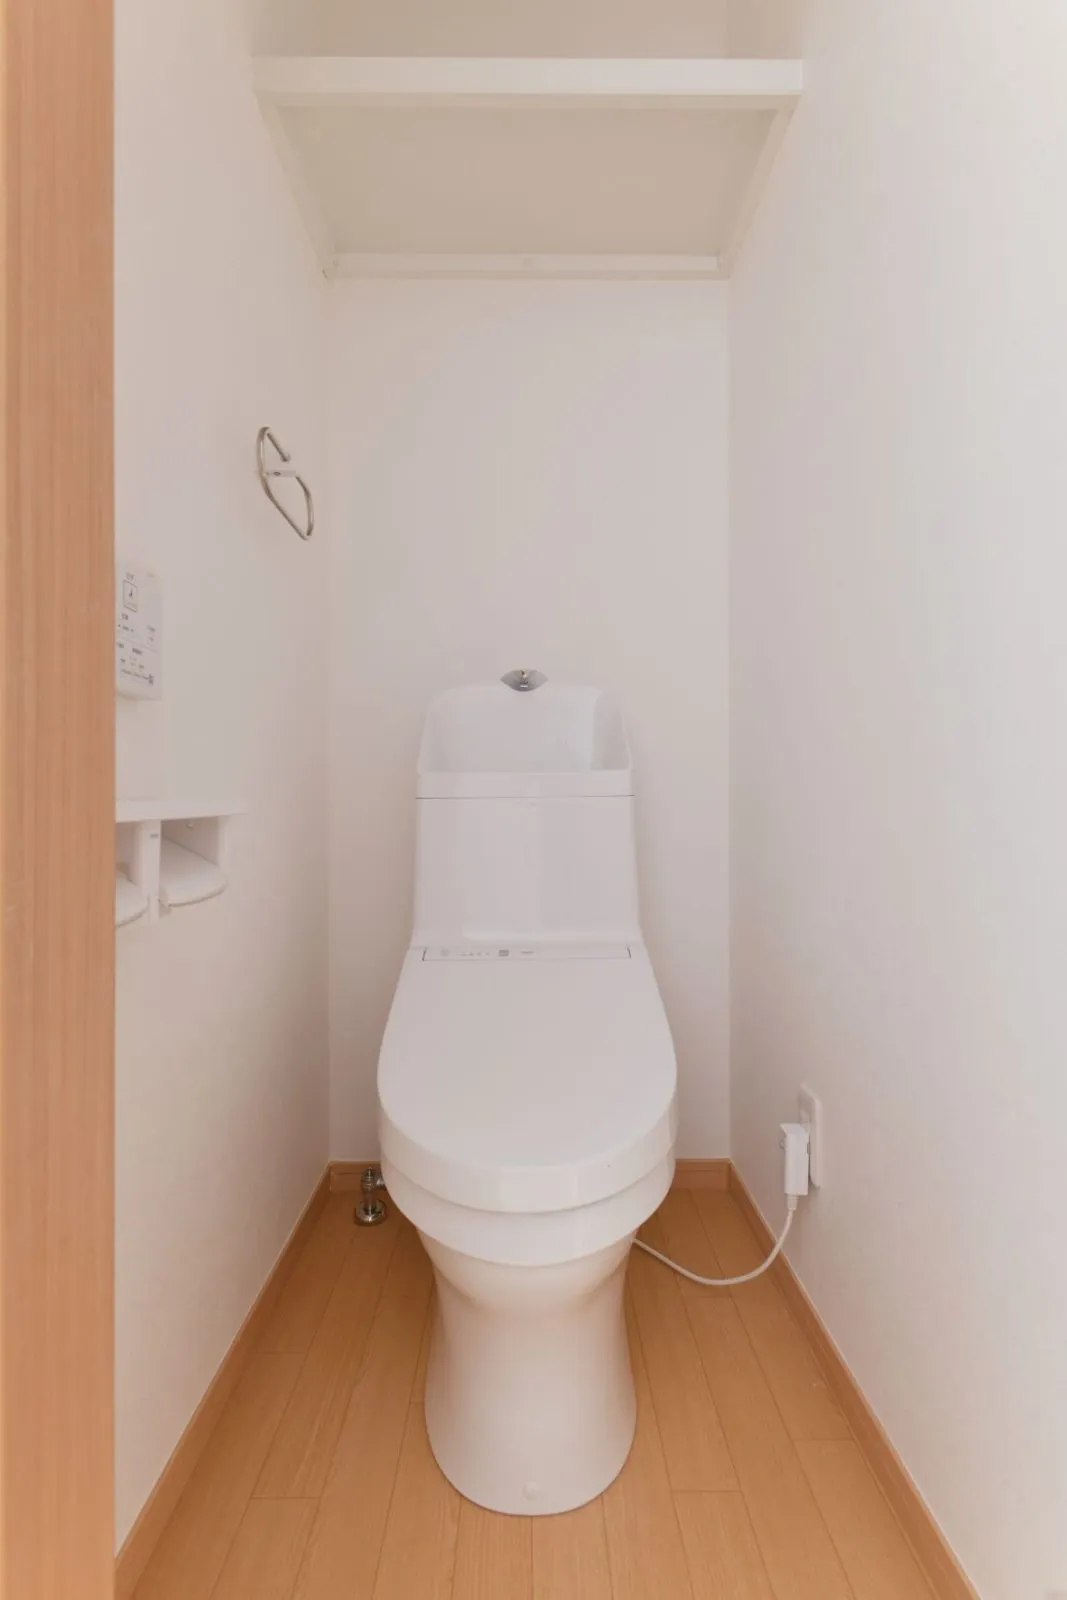 【トイレ】<br>白を基調としたシンプルなトイレ。<br>トイレのpdf説明書は下記のリンクへ<br>http://gigaplus.makeshop.jp/2016/products/2019/TOTO_ZJ-s.pdf